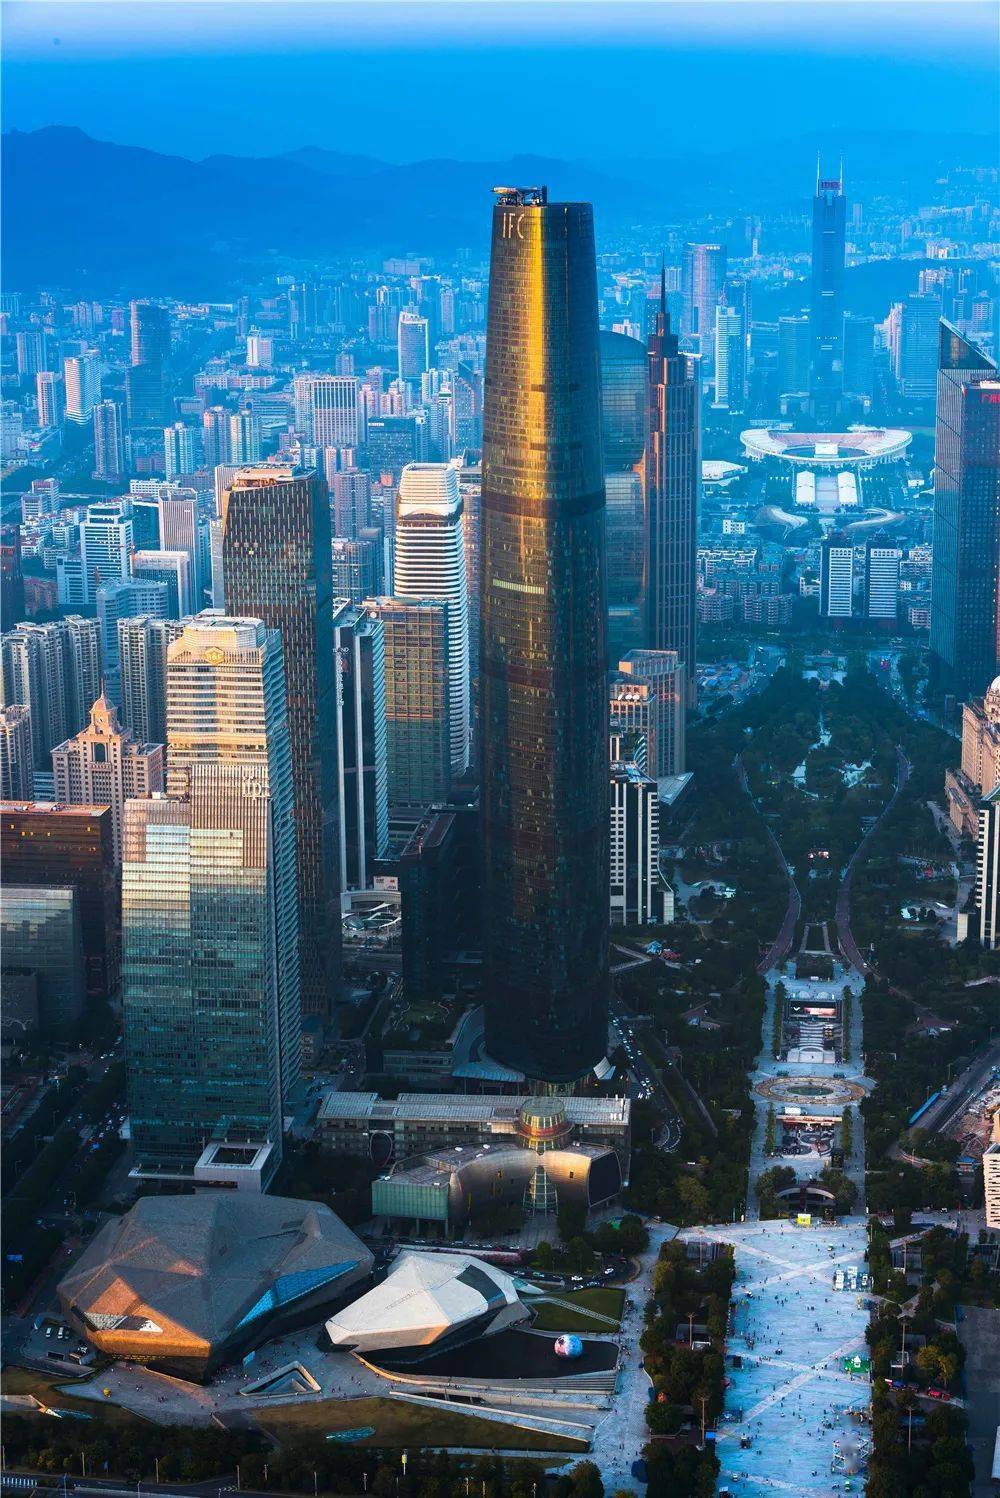 喜报| 广州国际金融中心,越秀金融大厦获评"超甲级商务写字楼"!